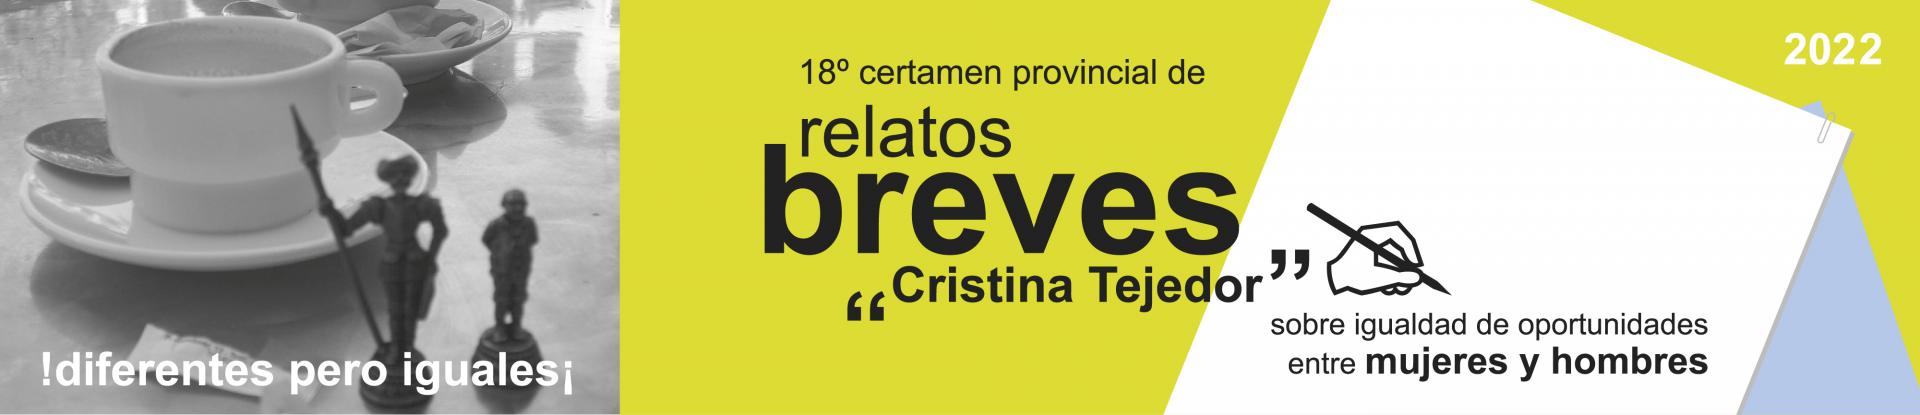  XVI Certamen Provincial de Relatos Breves ‘Cristina Tejedor’ Mayores